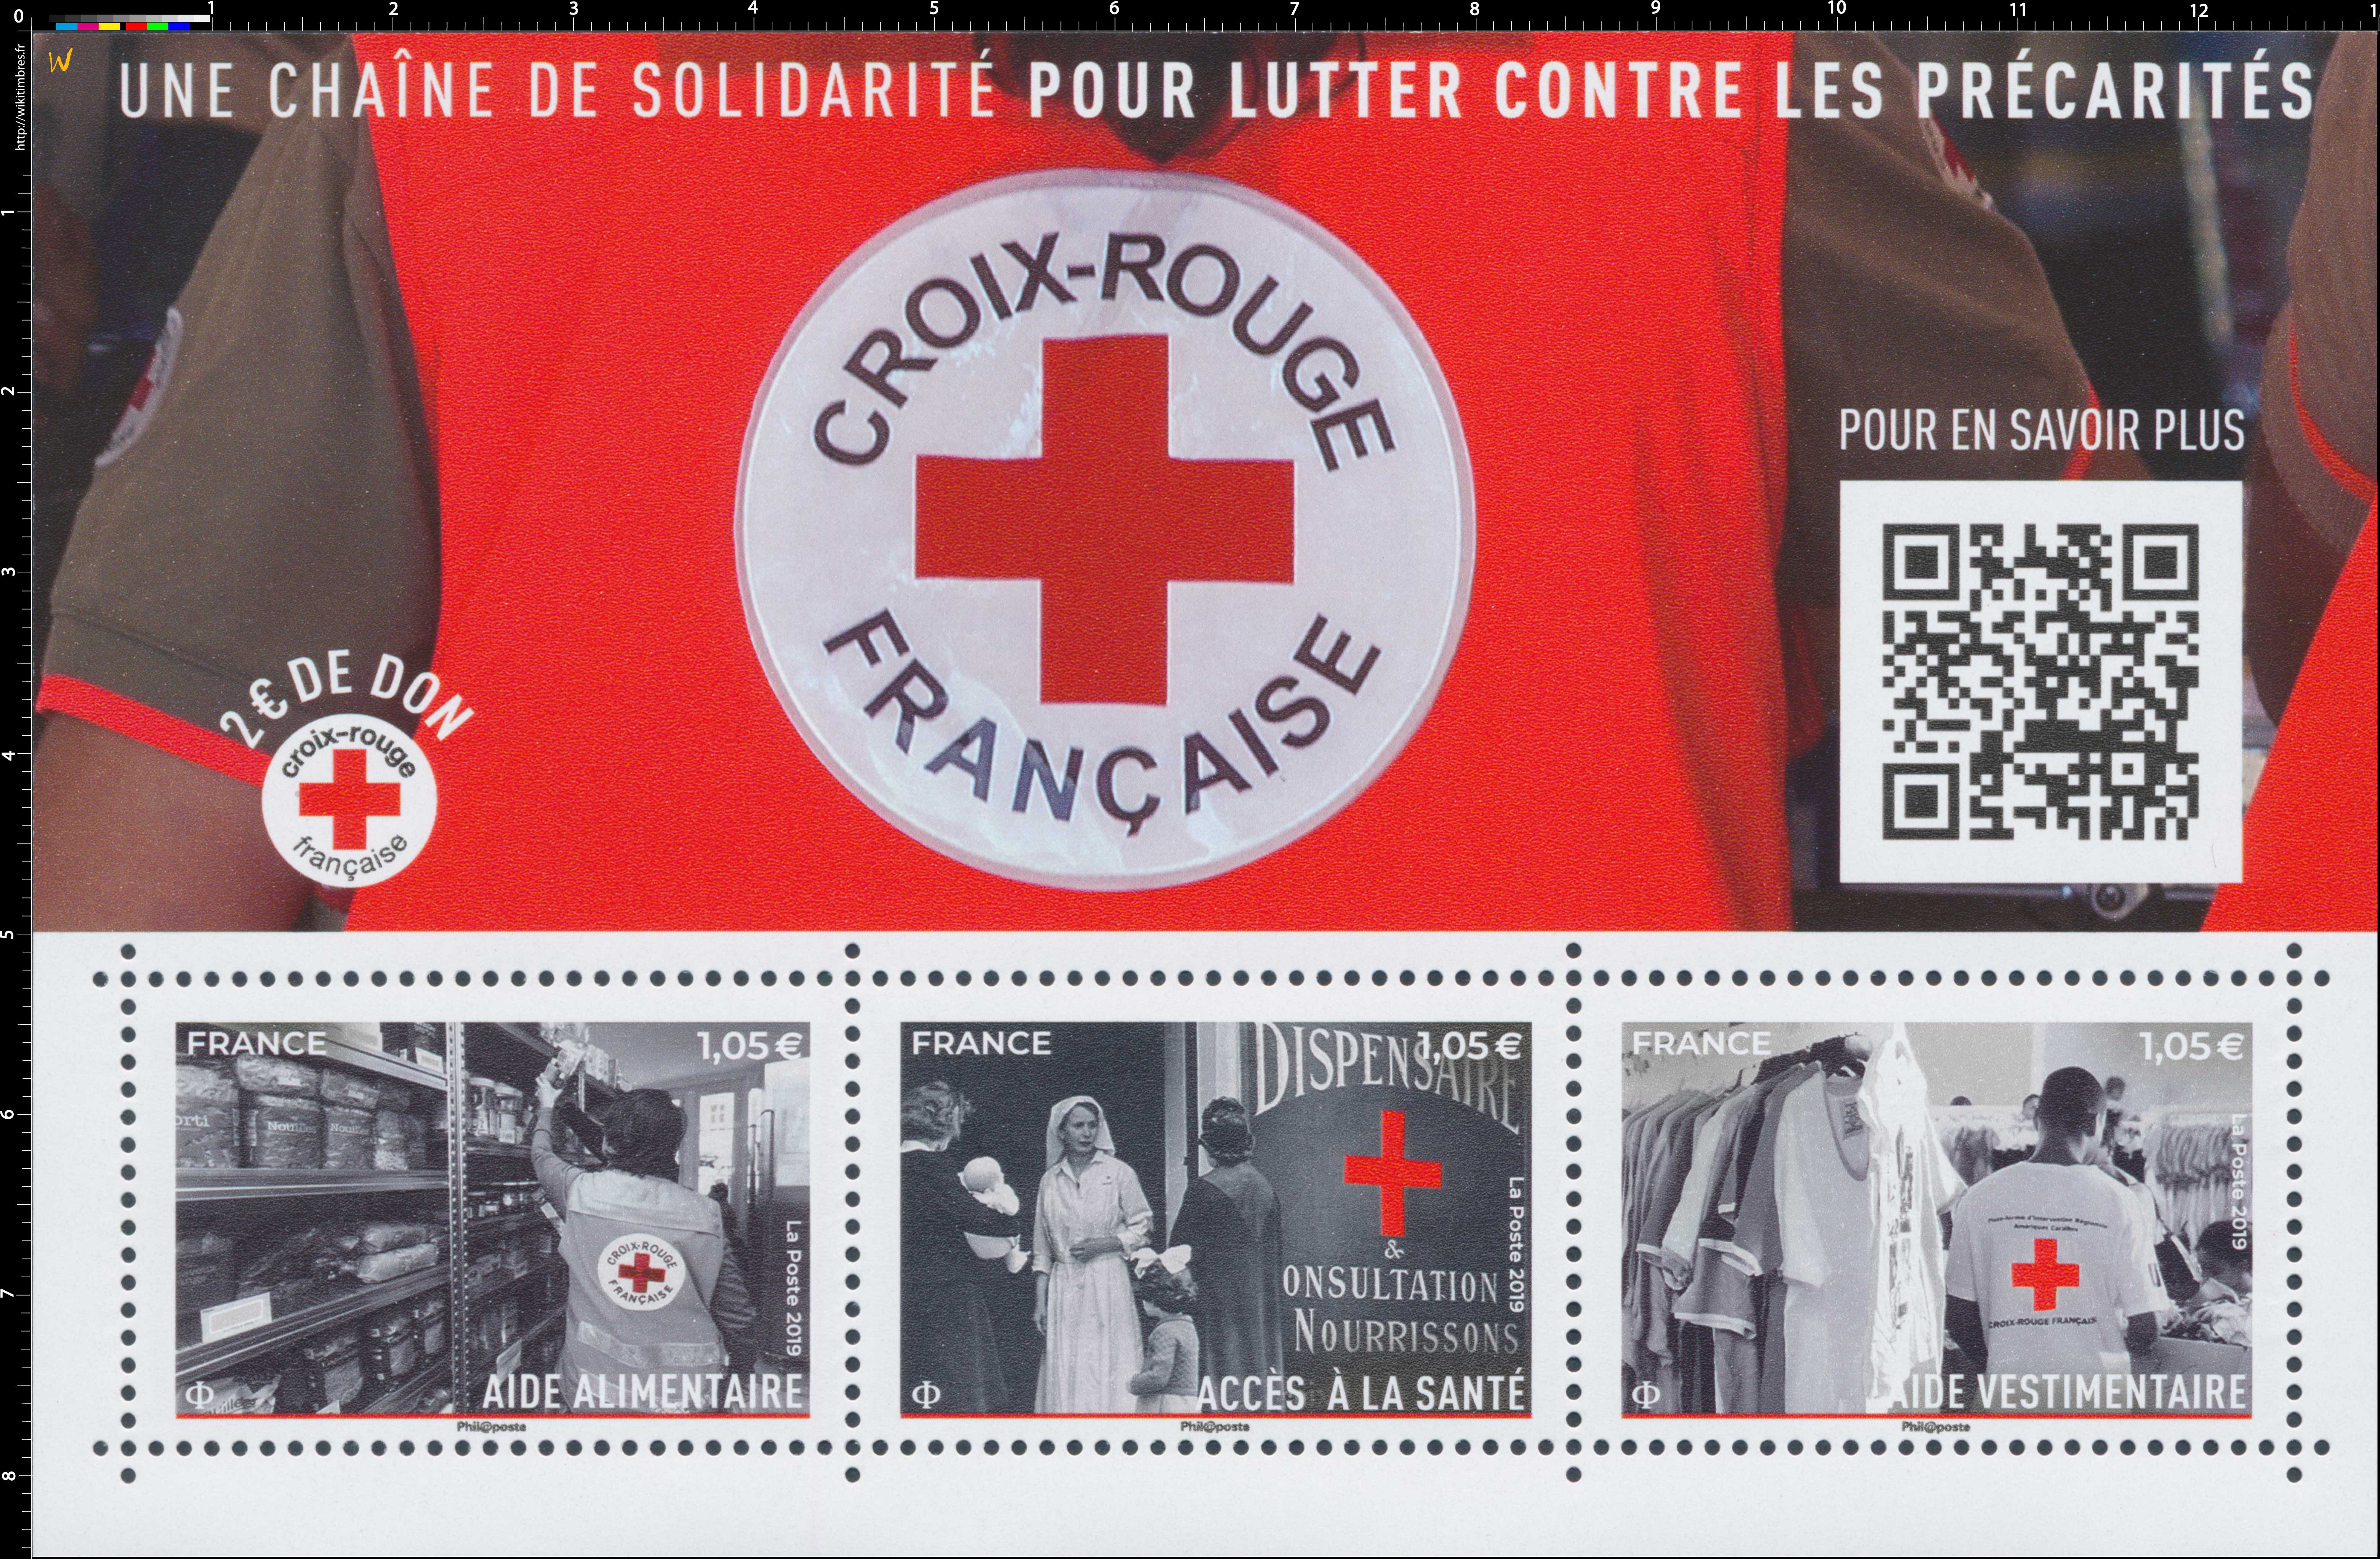 2019 Croix-Rouge française - UNE CHAÎNE DE SOLIDARITÉ POUR LUTTER CONTRE LES PRÉCARITÉS